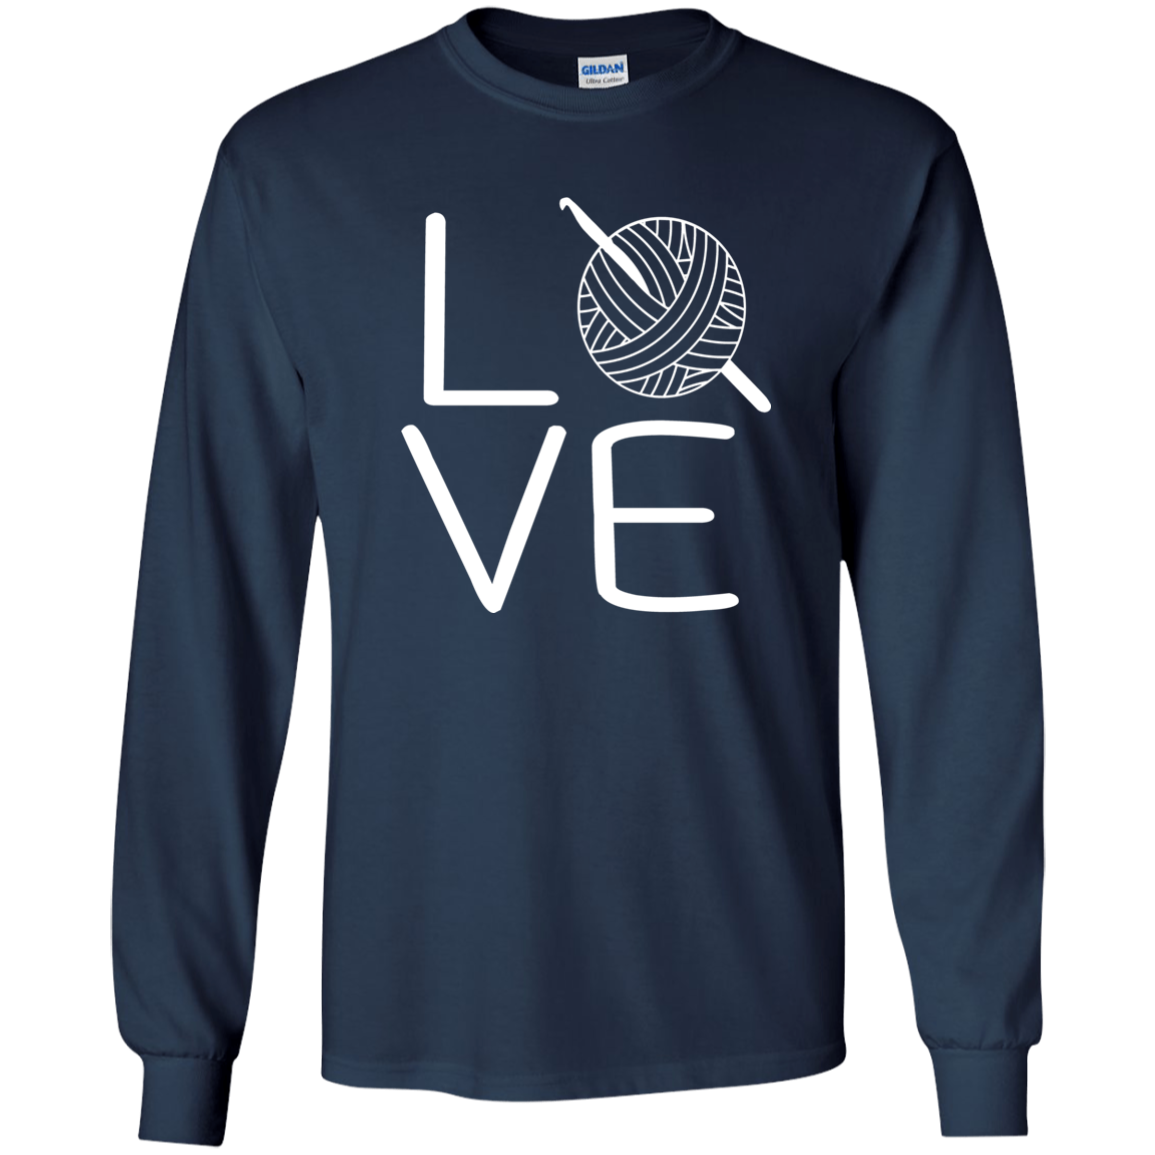 LOVE Crochet LS Ultra Cotton T-Shirt